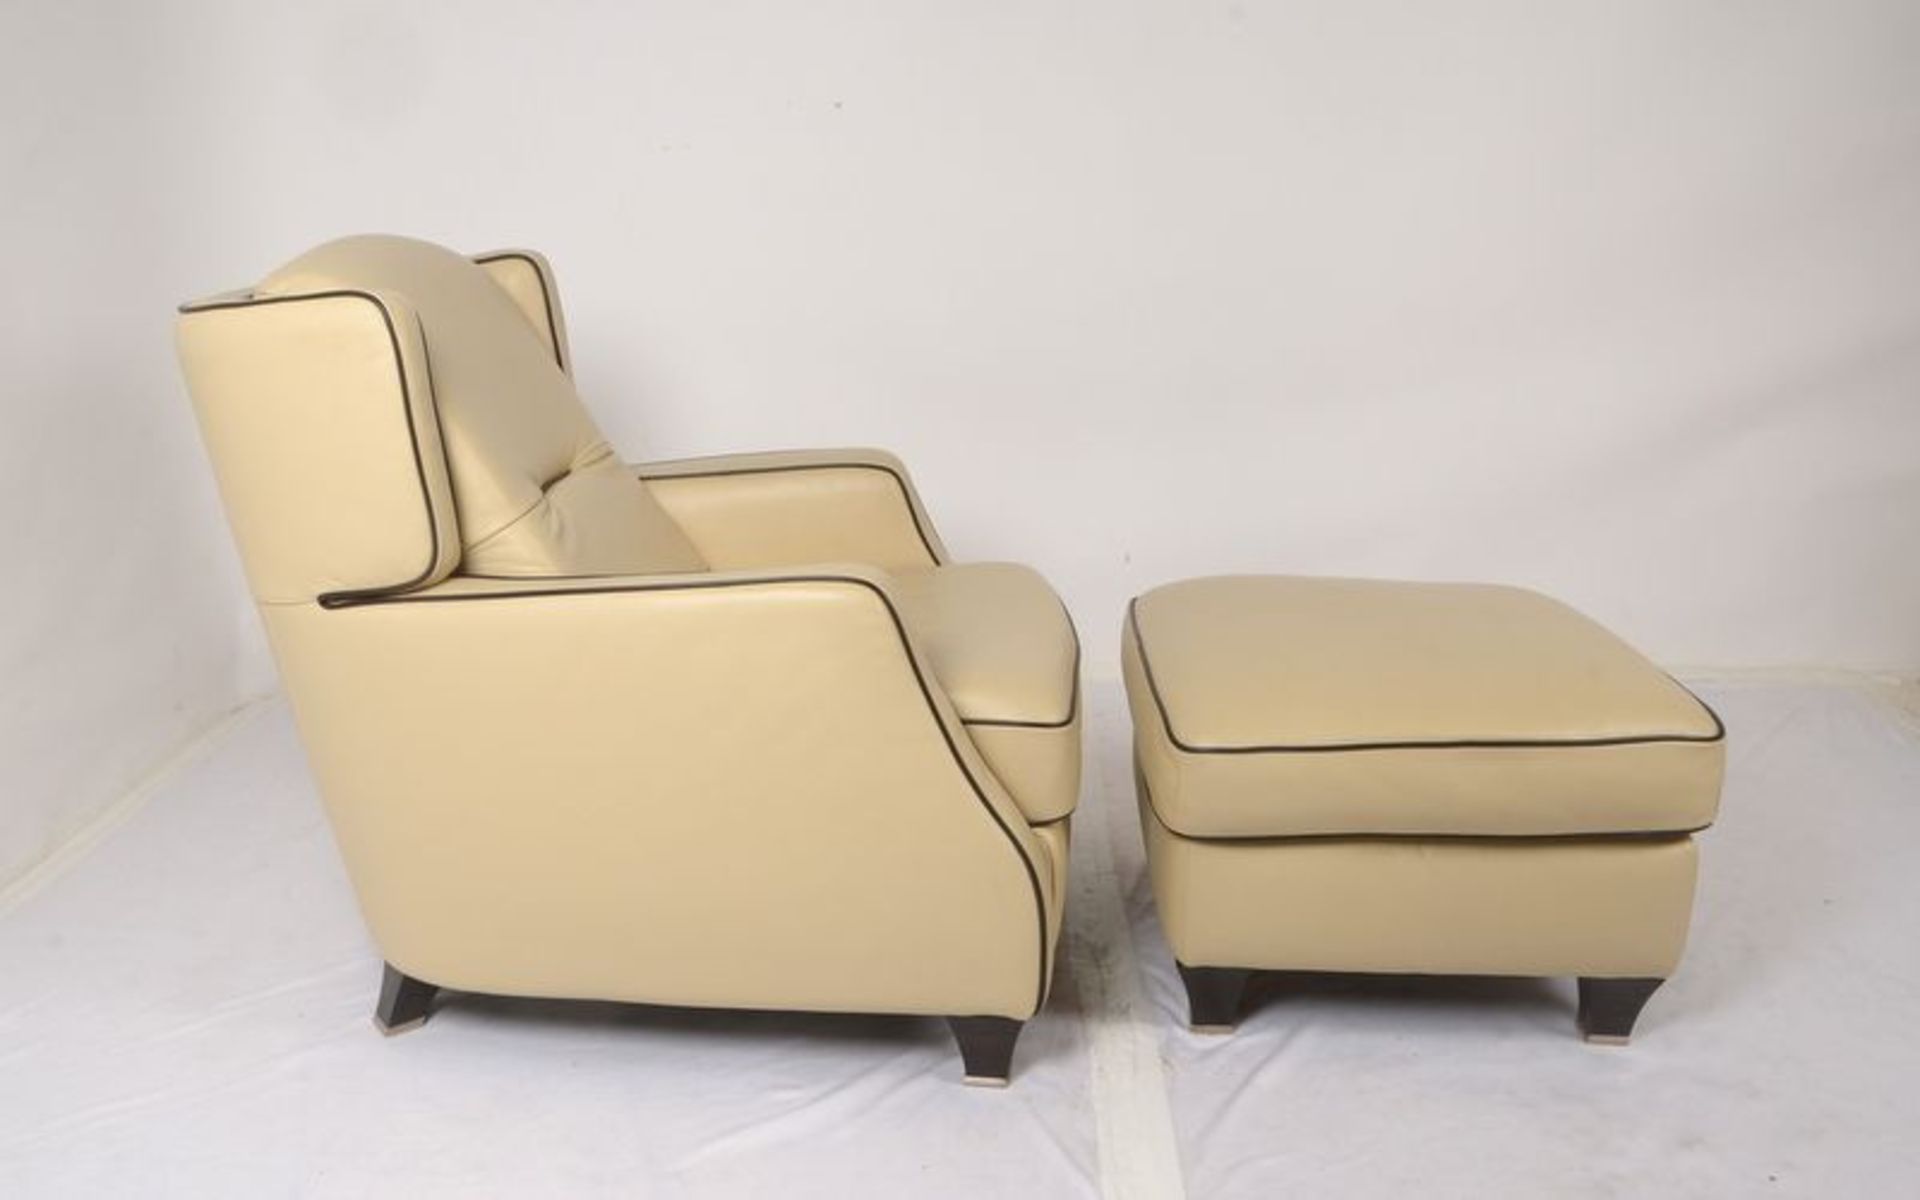 Natuzzi/Italien, Relaxsessel, beigefarbener Lederbezug, Lehnh&ouml;he 87 cm, Breite 85 cm, Sitzh&oum - Bild 2 aus 3